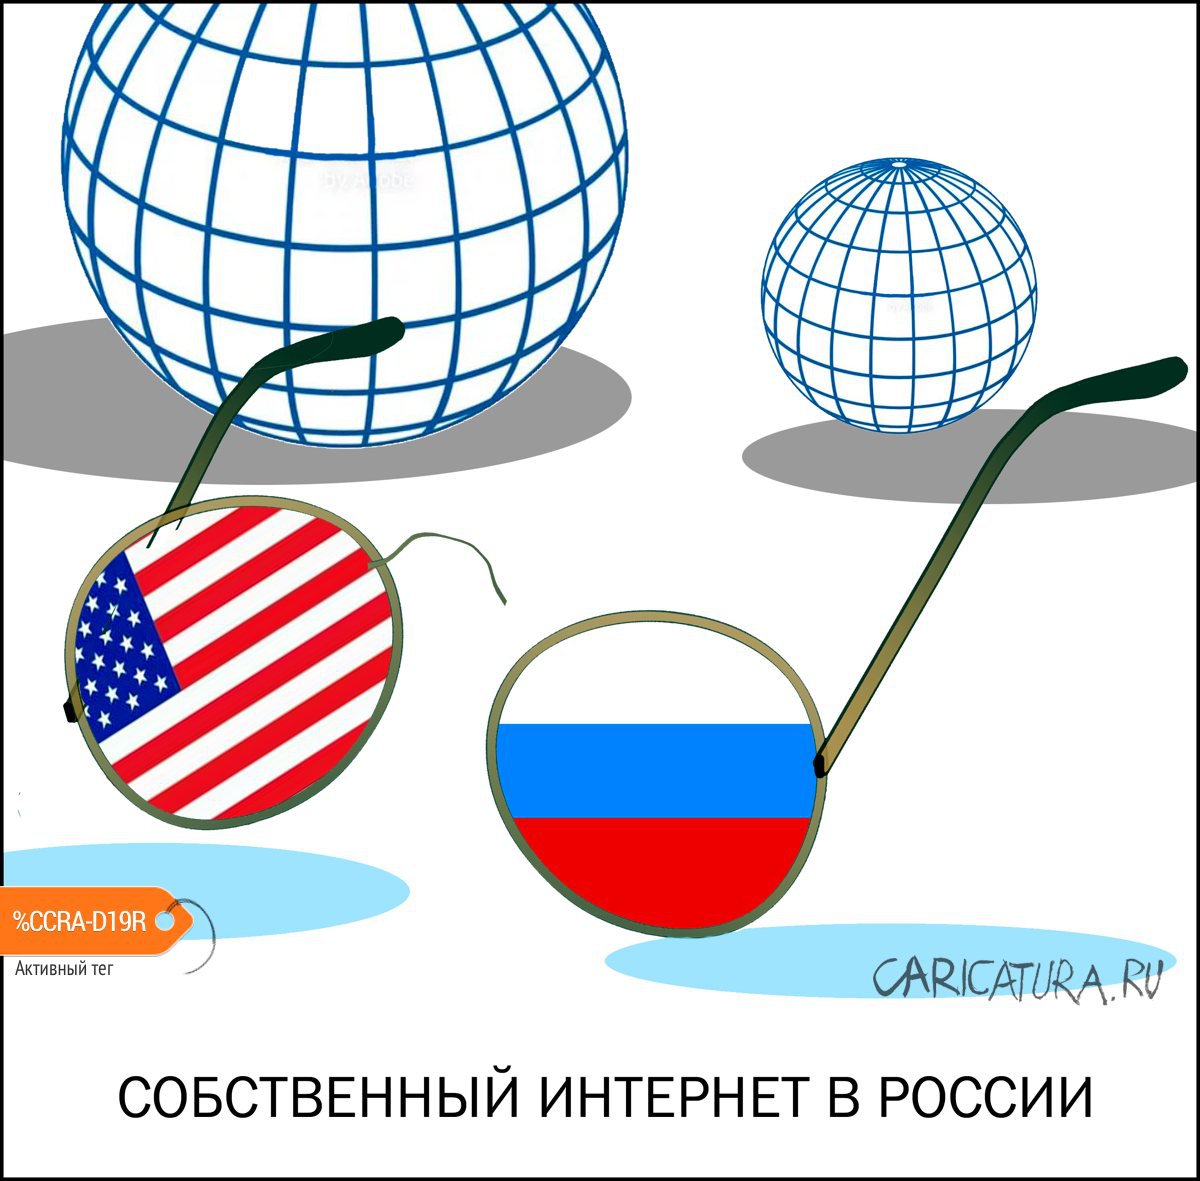 Карикатура "Интернет в России", Александр Уваров